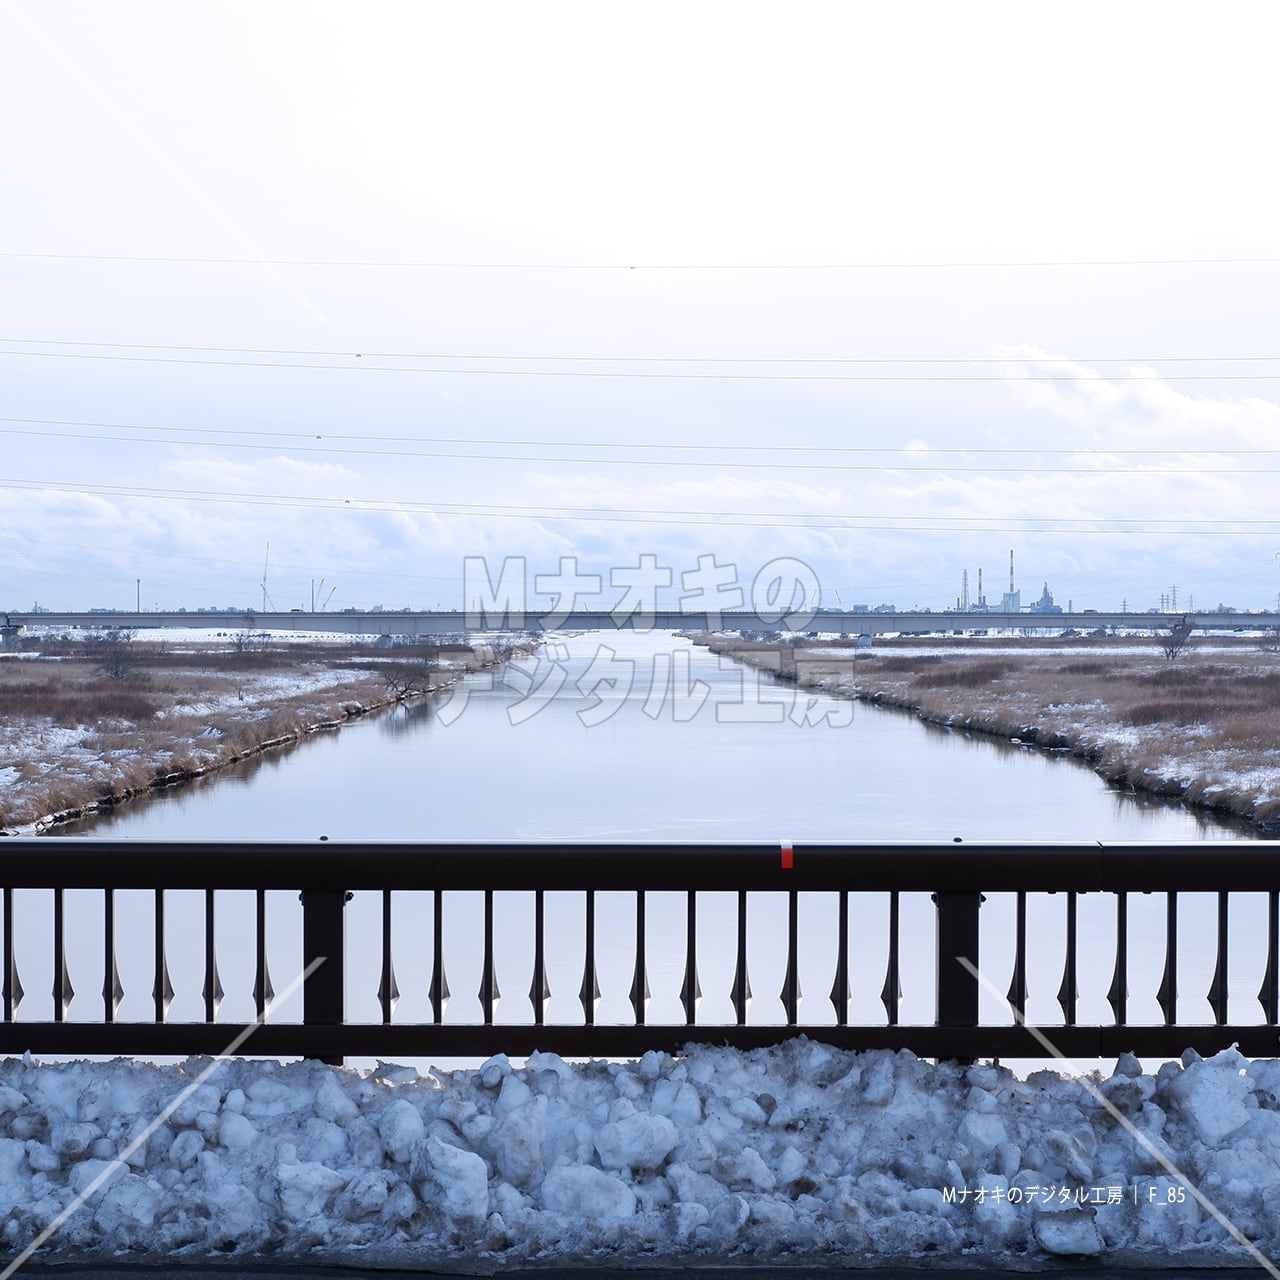 冬の新釧路川と橋　Shinkushiro River and bridge in winter